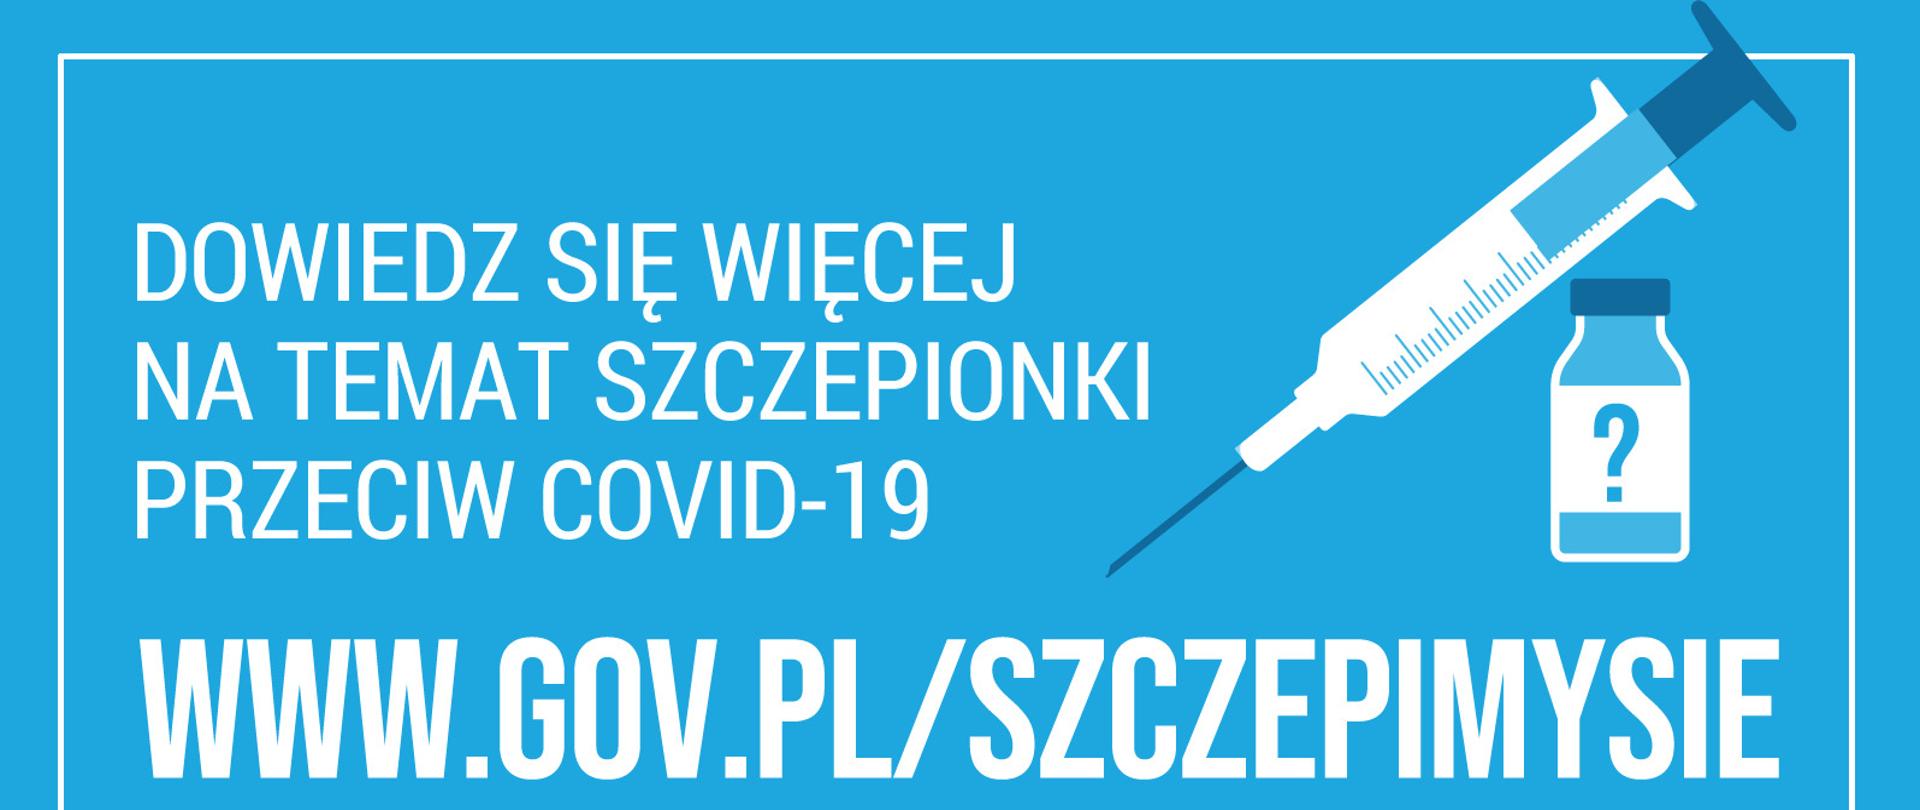 Zdjęcie na niebieskim tle przedstawia biały napis: Dowiedz się więcej na temat szczepionki przeciwko COVID-19. podana jest strona internetowa www.gov.pl/szczepimysie. Na dole zdjęcia napis #szczepimysię. W prawym górnym roku biała grafika strzykawki oraz małej butelki.